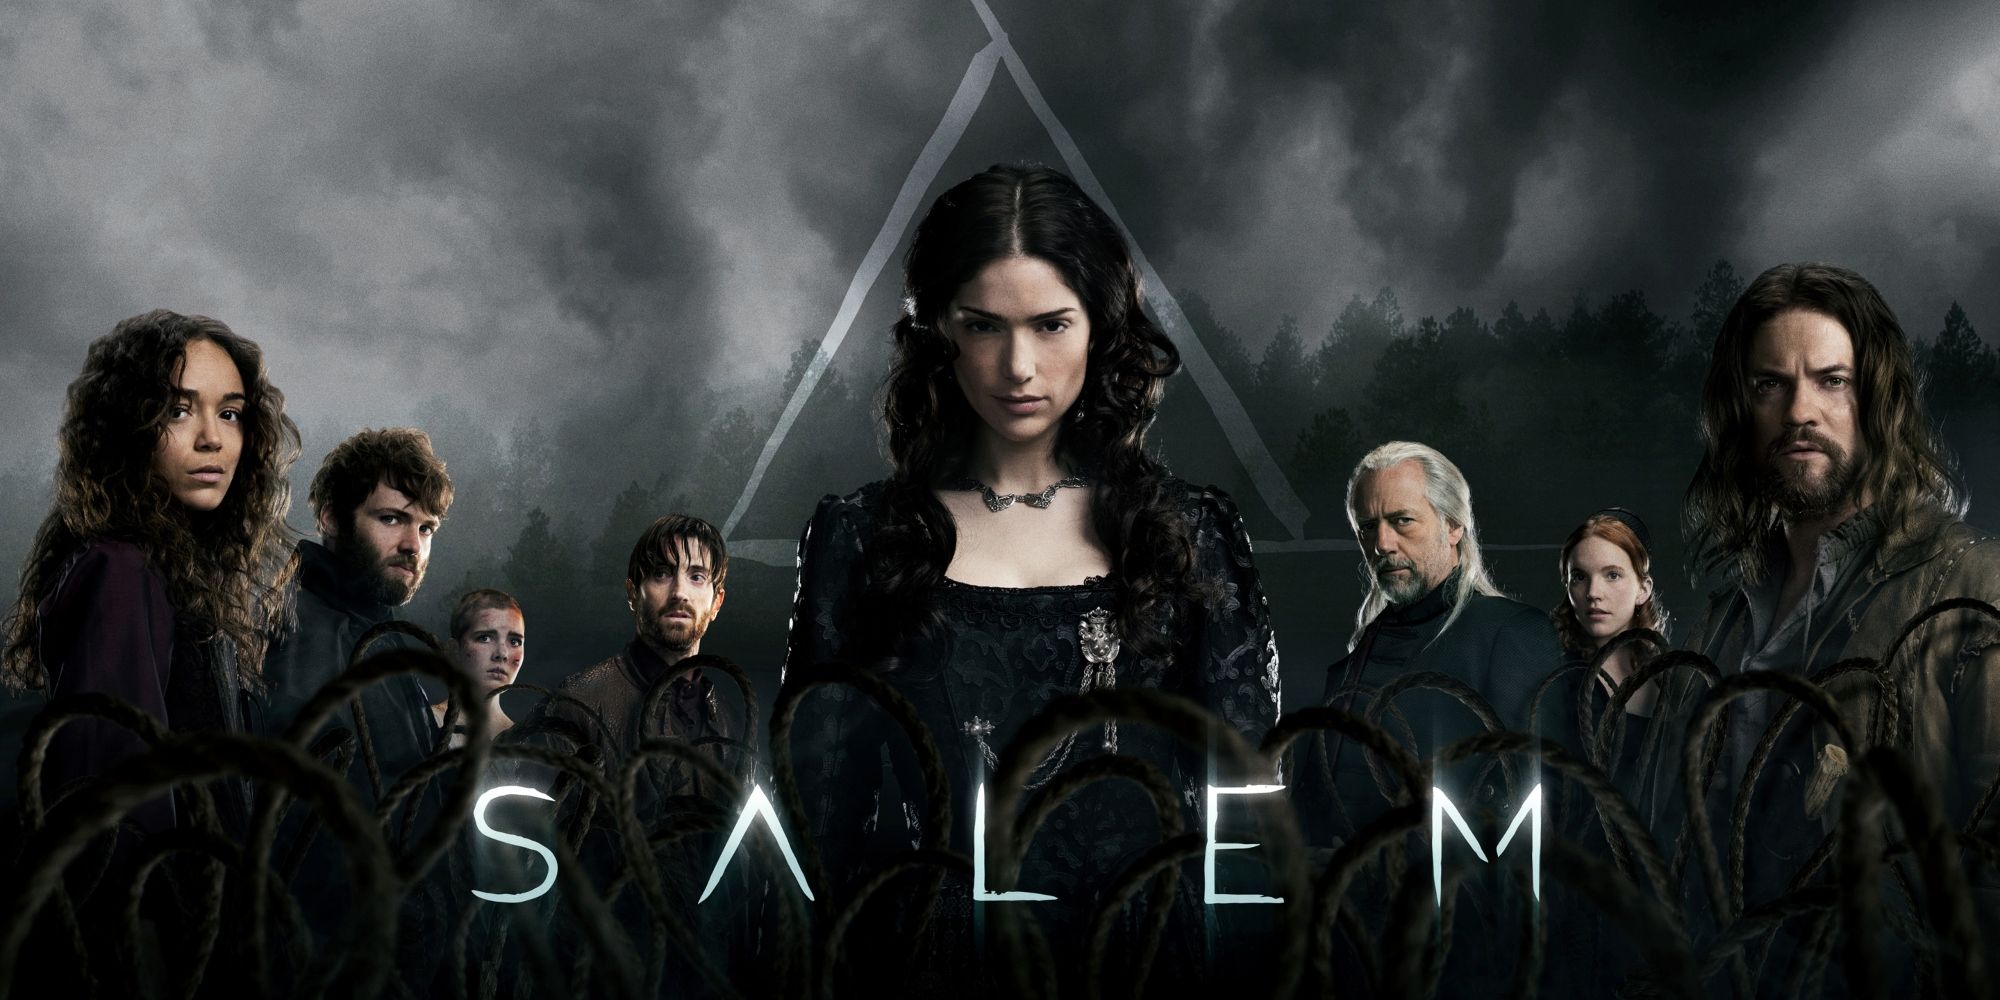 A promotion image of the Salem cast